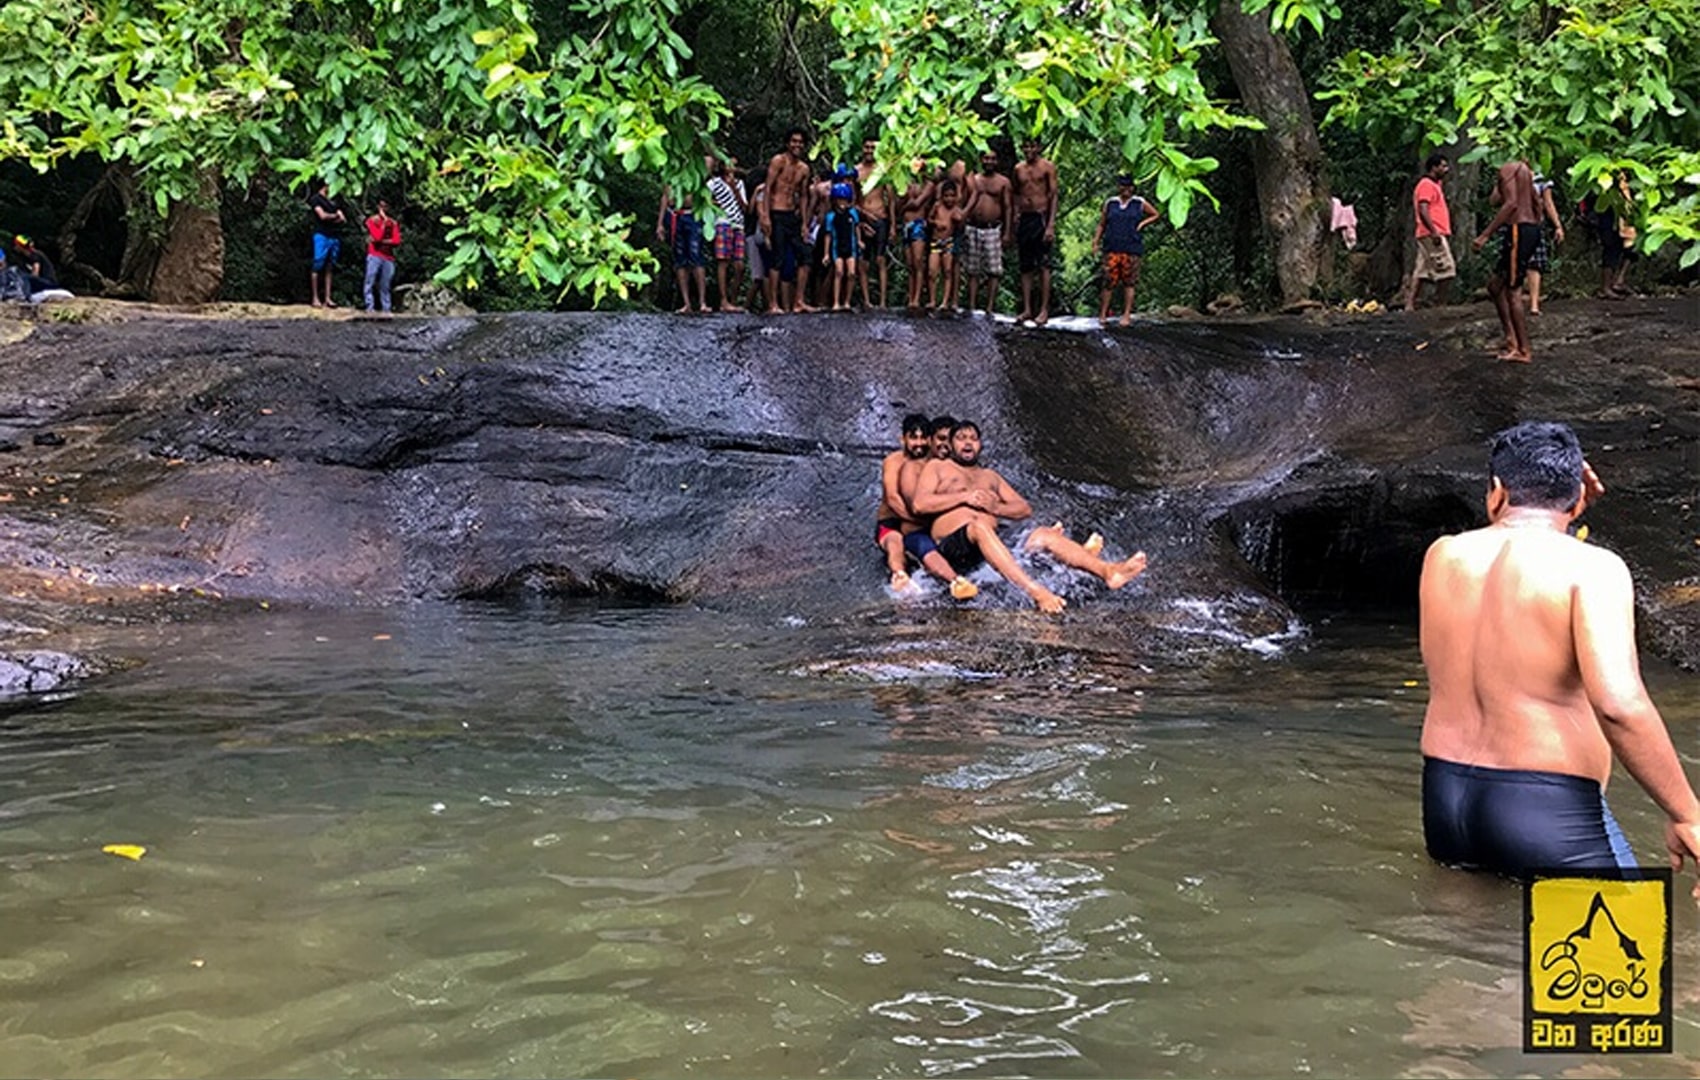 water activities in meemure